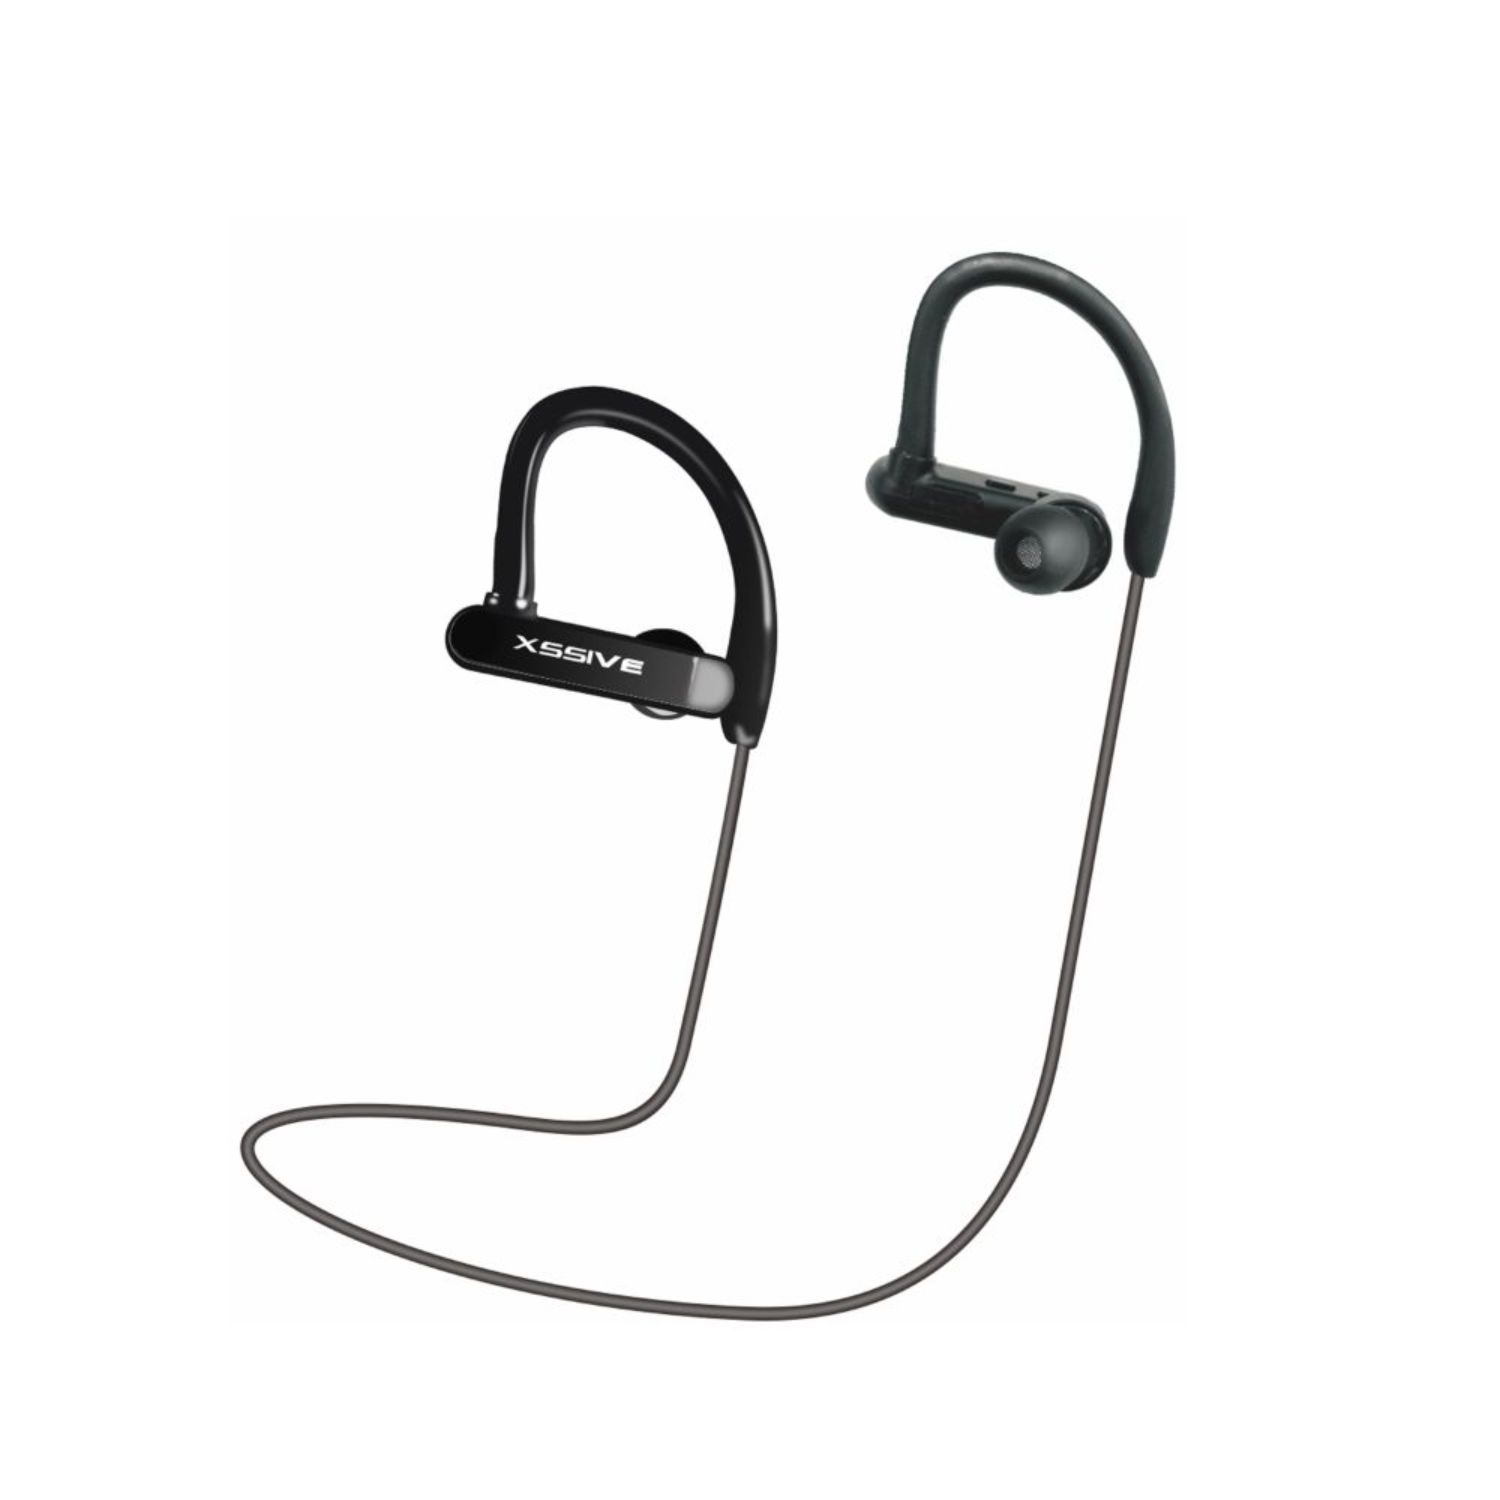 Schwarz Headset BT06, In-ear COFI